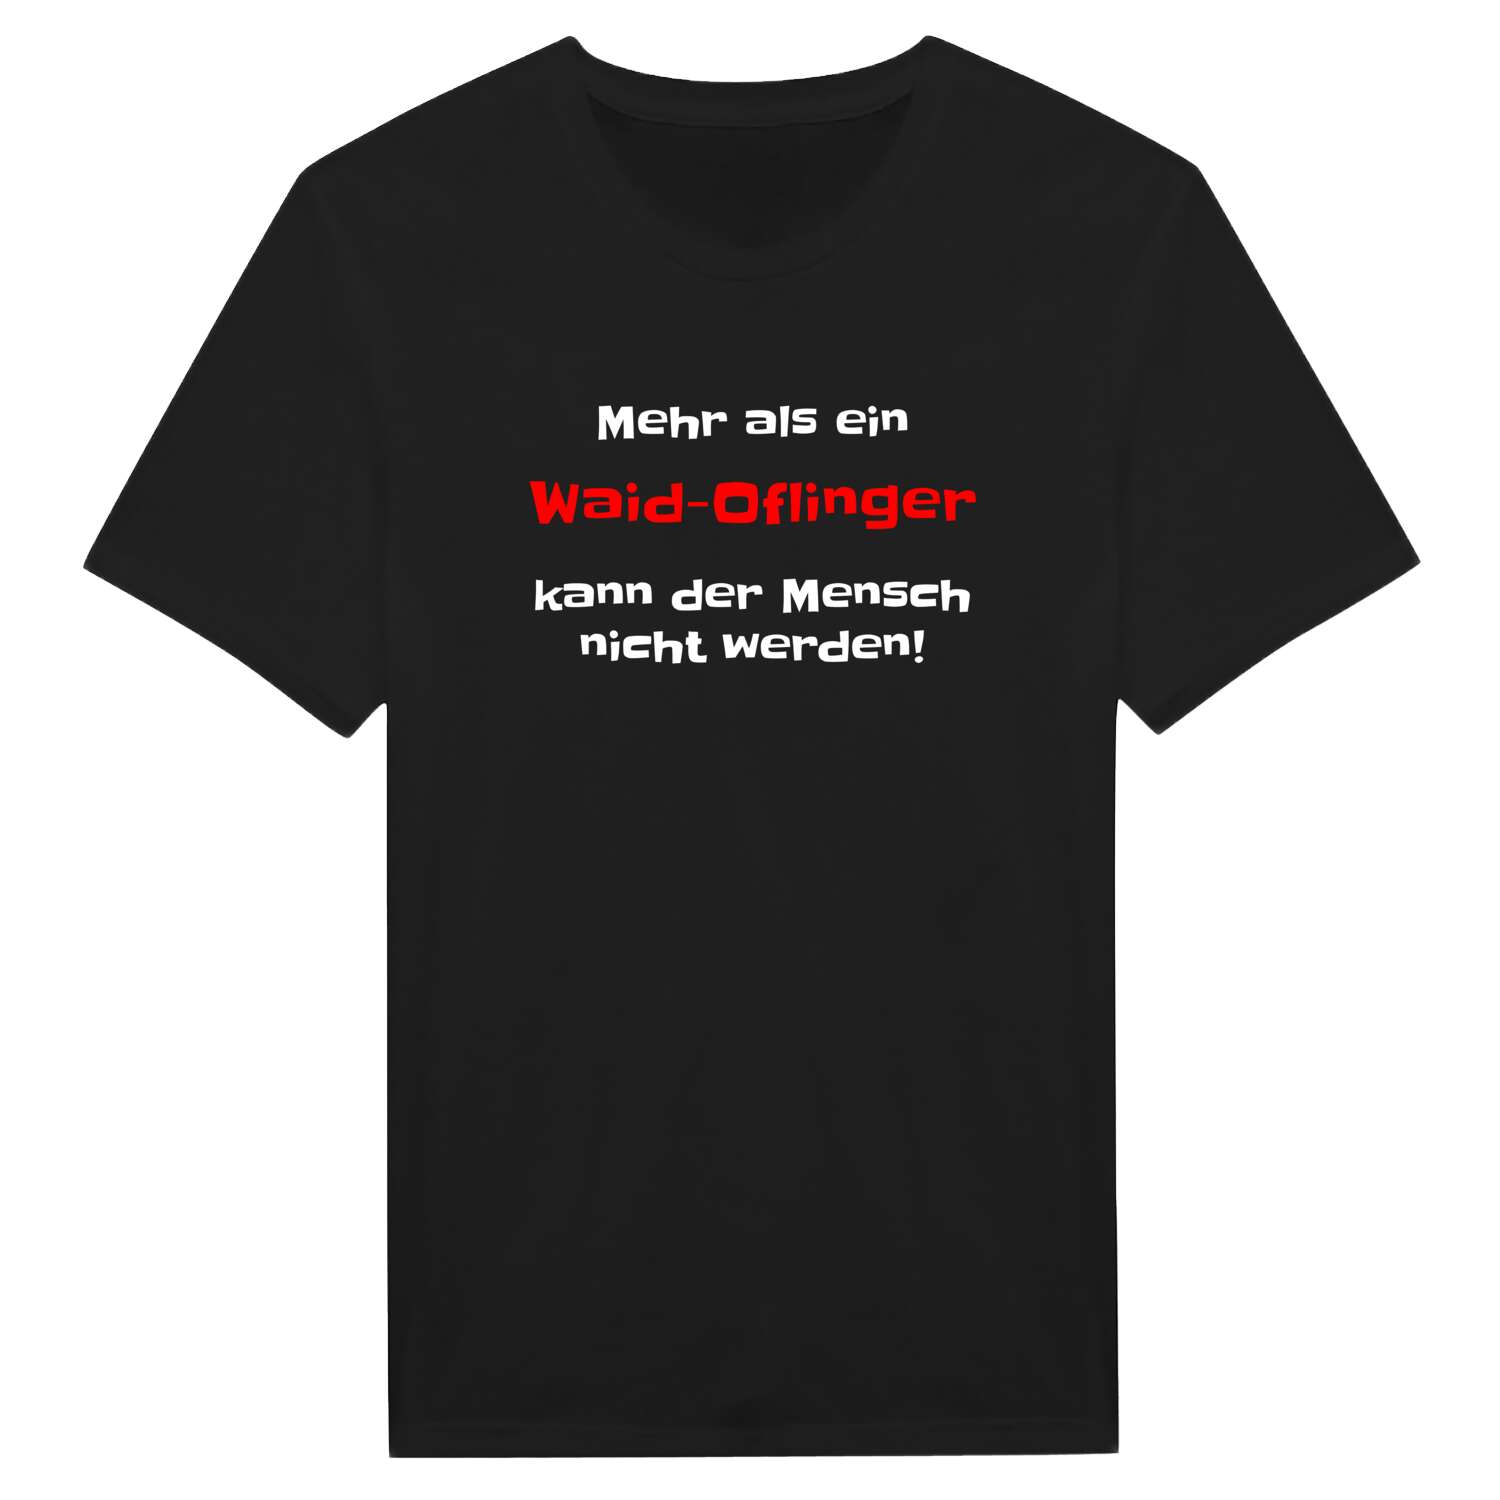 Waid-Ofling T-Shirt »Mehr als ein«